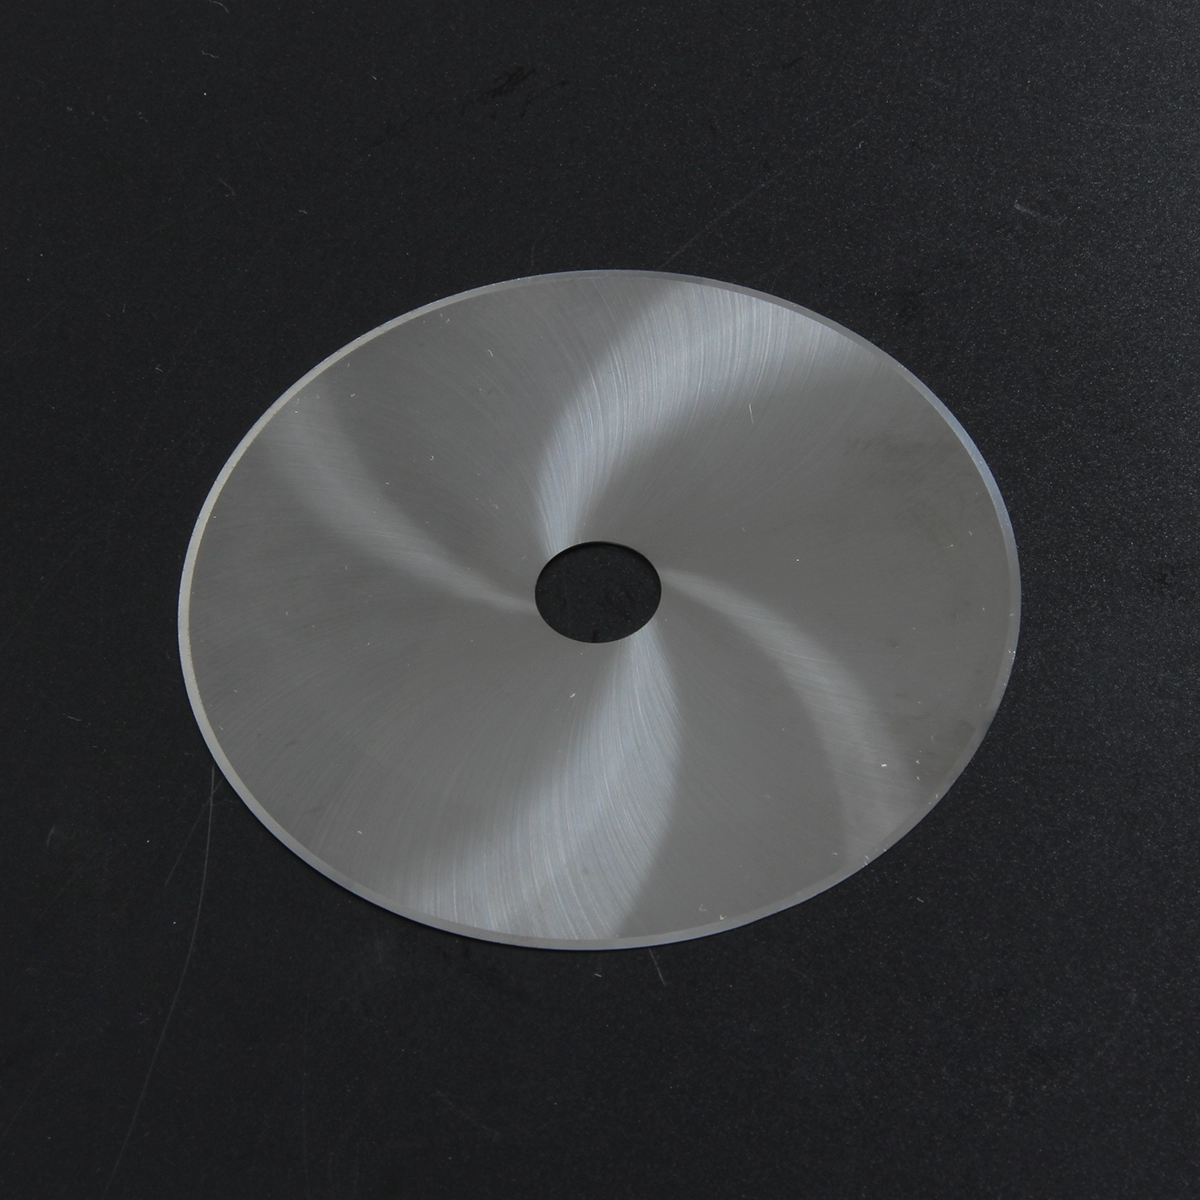 Самый продаваемый табачный промышленный твердосплавный дисковый нож от фабрики licheng